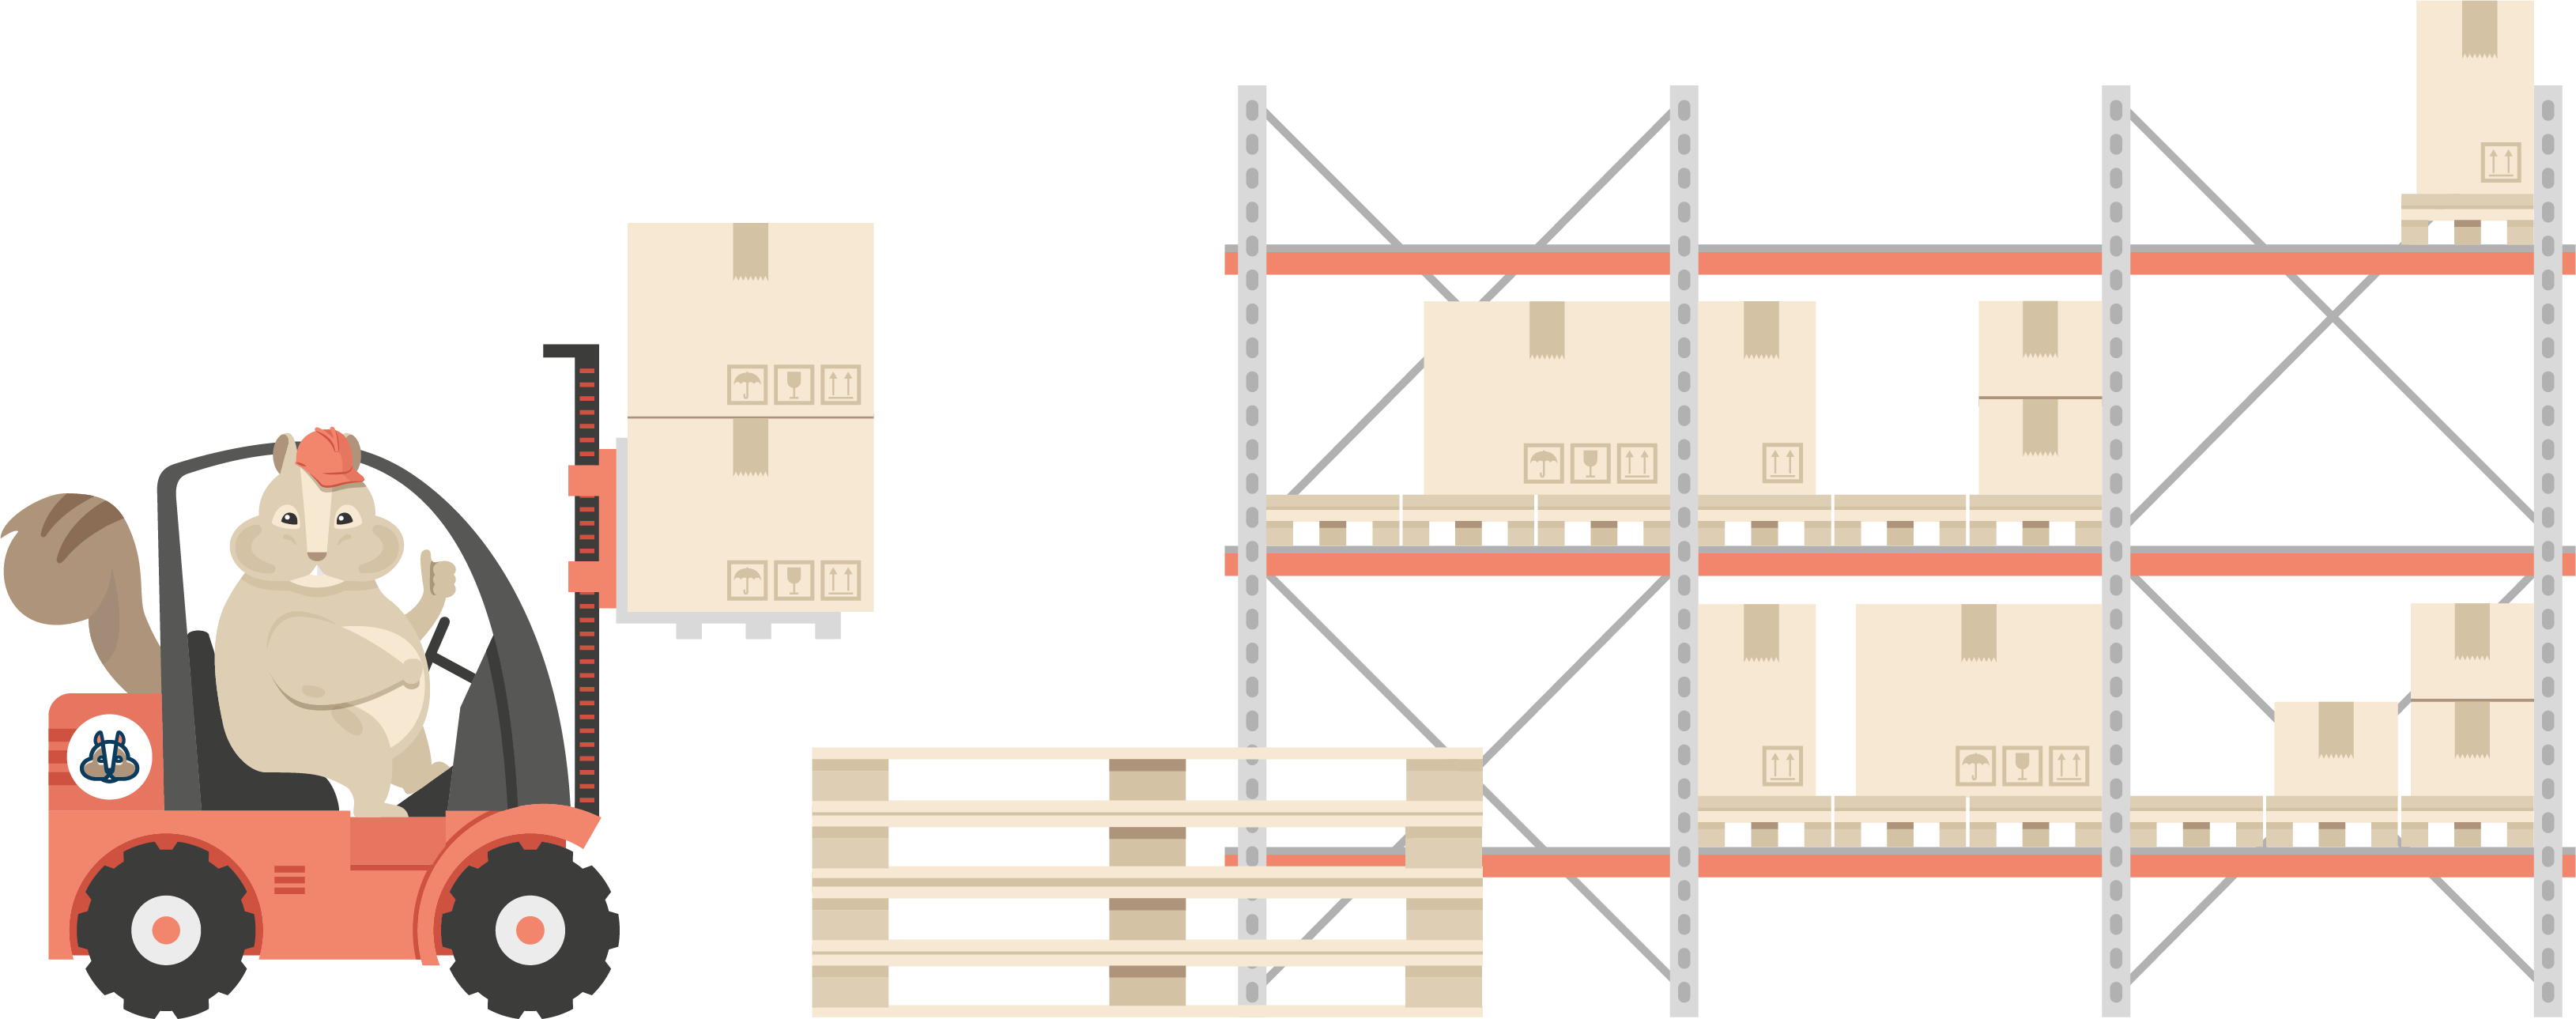 Illustration eines Shipmunks Lagermitarbeiters der mit einem Gabelstapler Pakete in ein Lagerregal einräumt